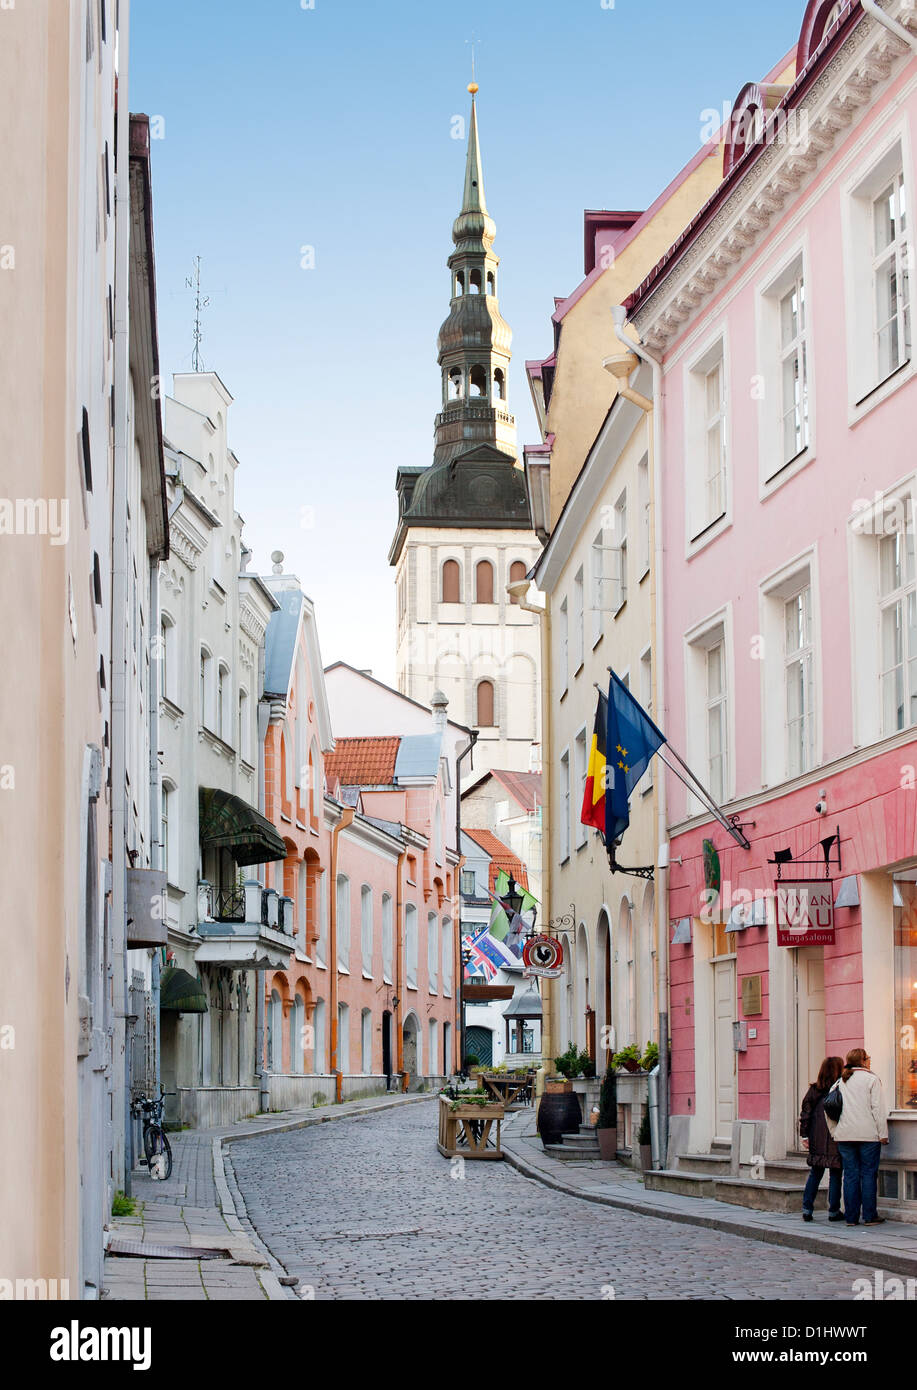 Vista della chiesa di San Nicholas steeple da una strada nella città vecchia di Tallinn, la capitale dell'Estonia. Foto Stock